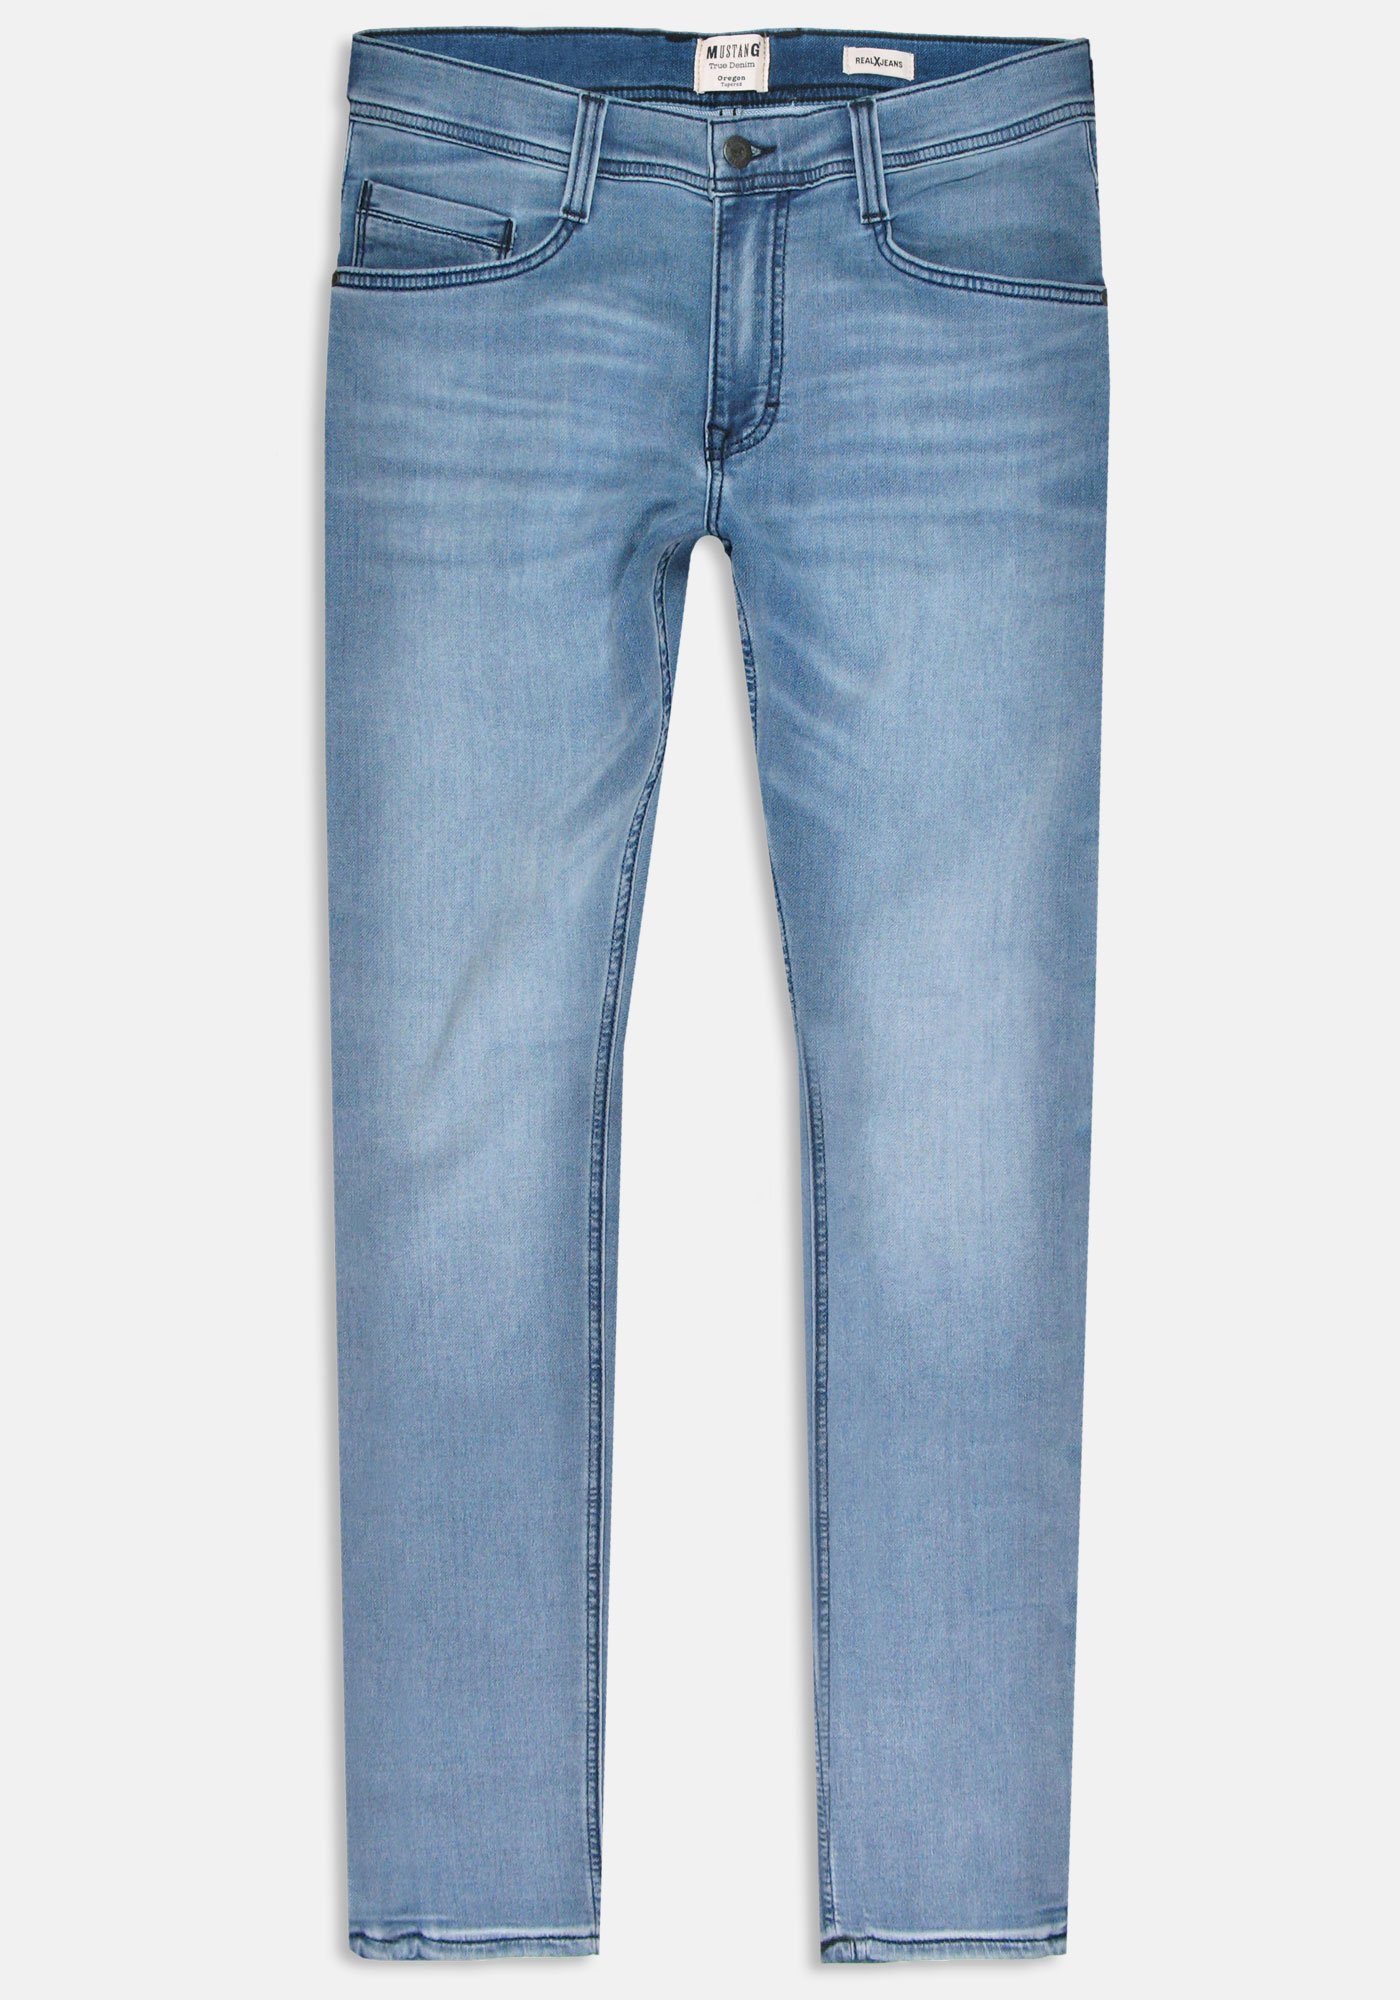 K Sweat-Denim MUSTANG Oregon 5-Pocket-Jeans blue-5000403 Tapered denim